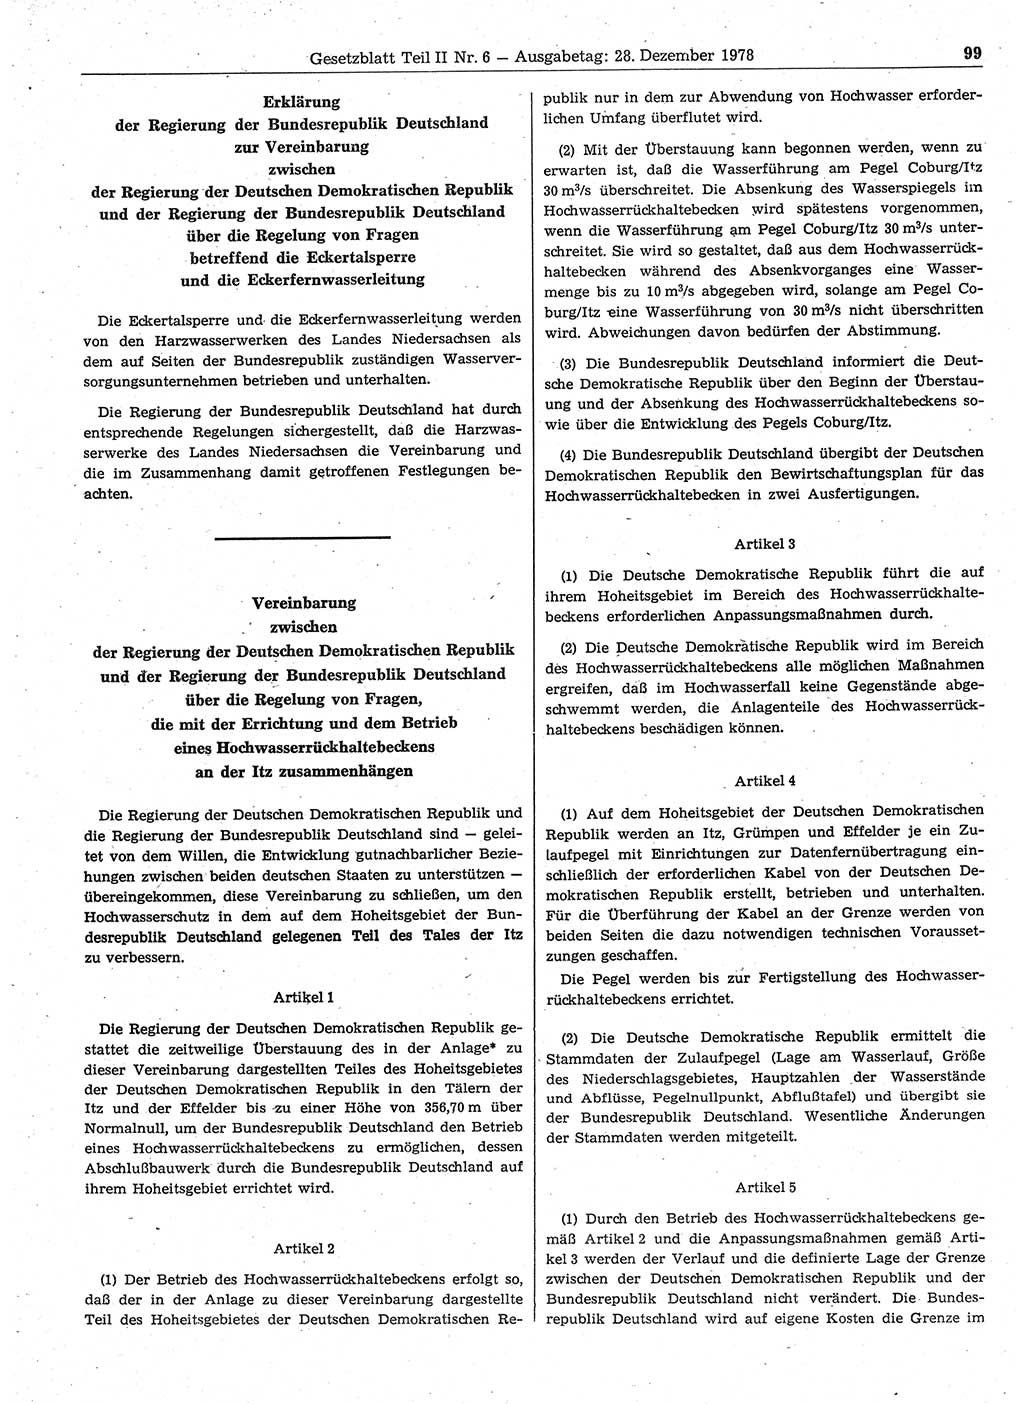 Gesetzblatt (GBl.) der Deutschen Demokratischen Republik (DDR) Teil ⅠⅠ 1978, Seite 99 (GBl. DDR ⅠⅠ 1978, S. 99)